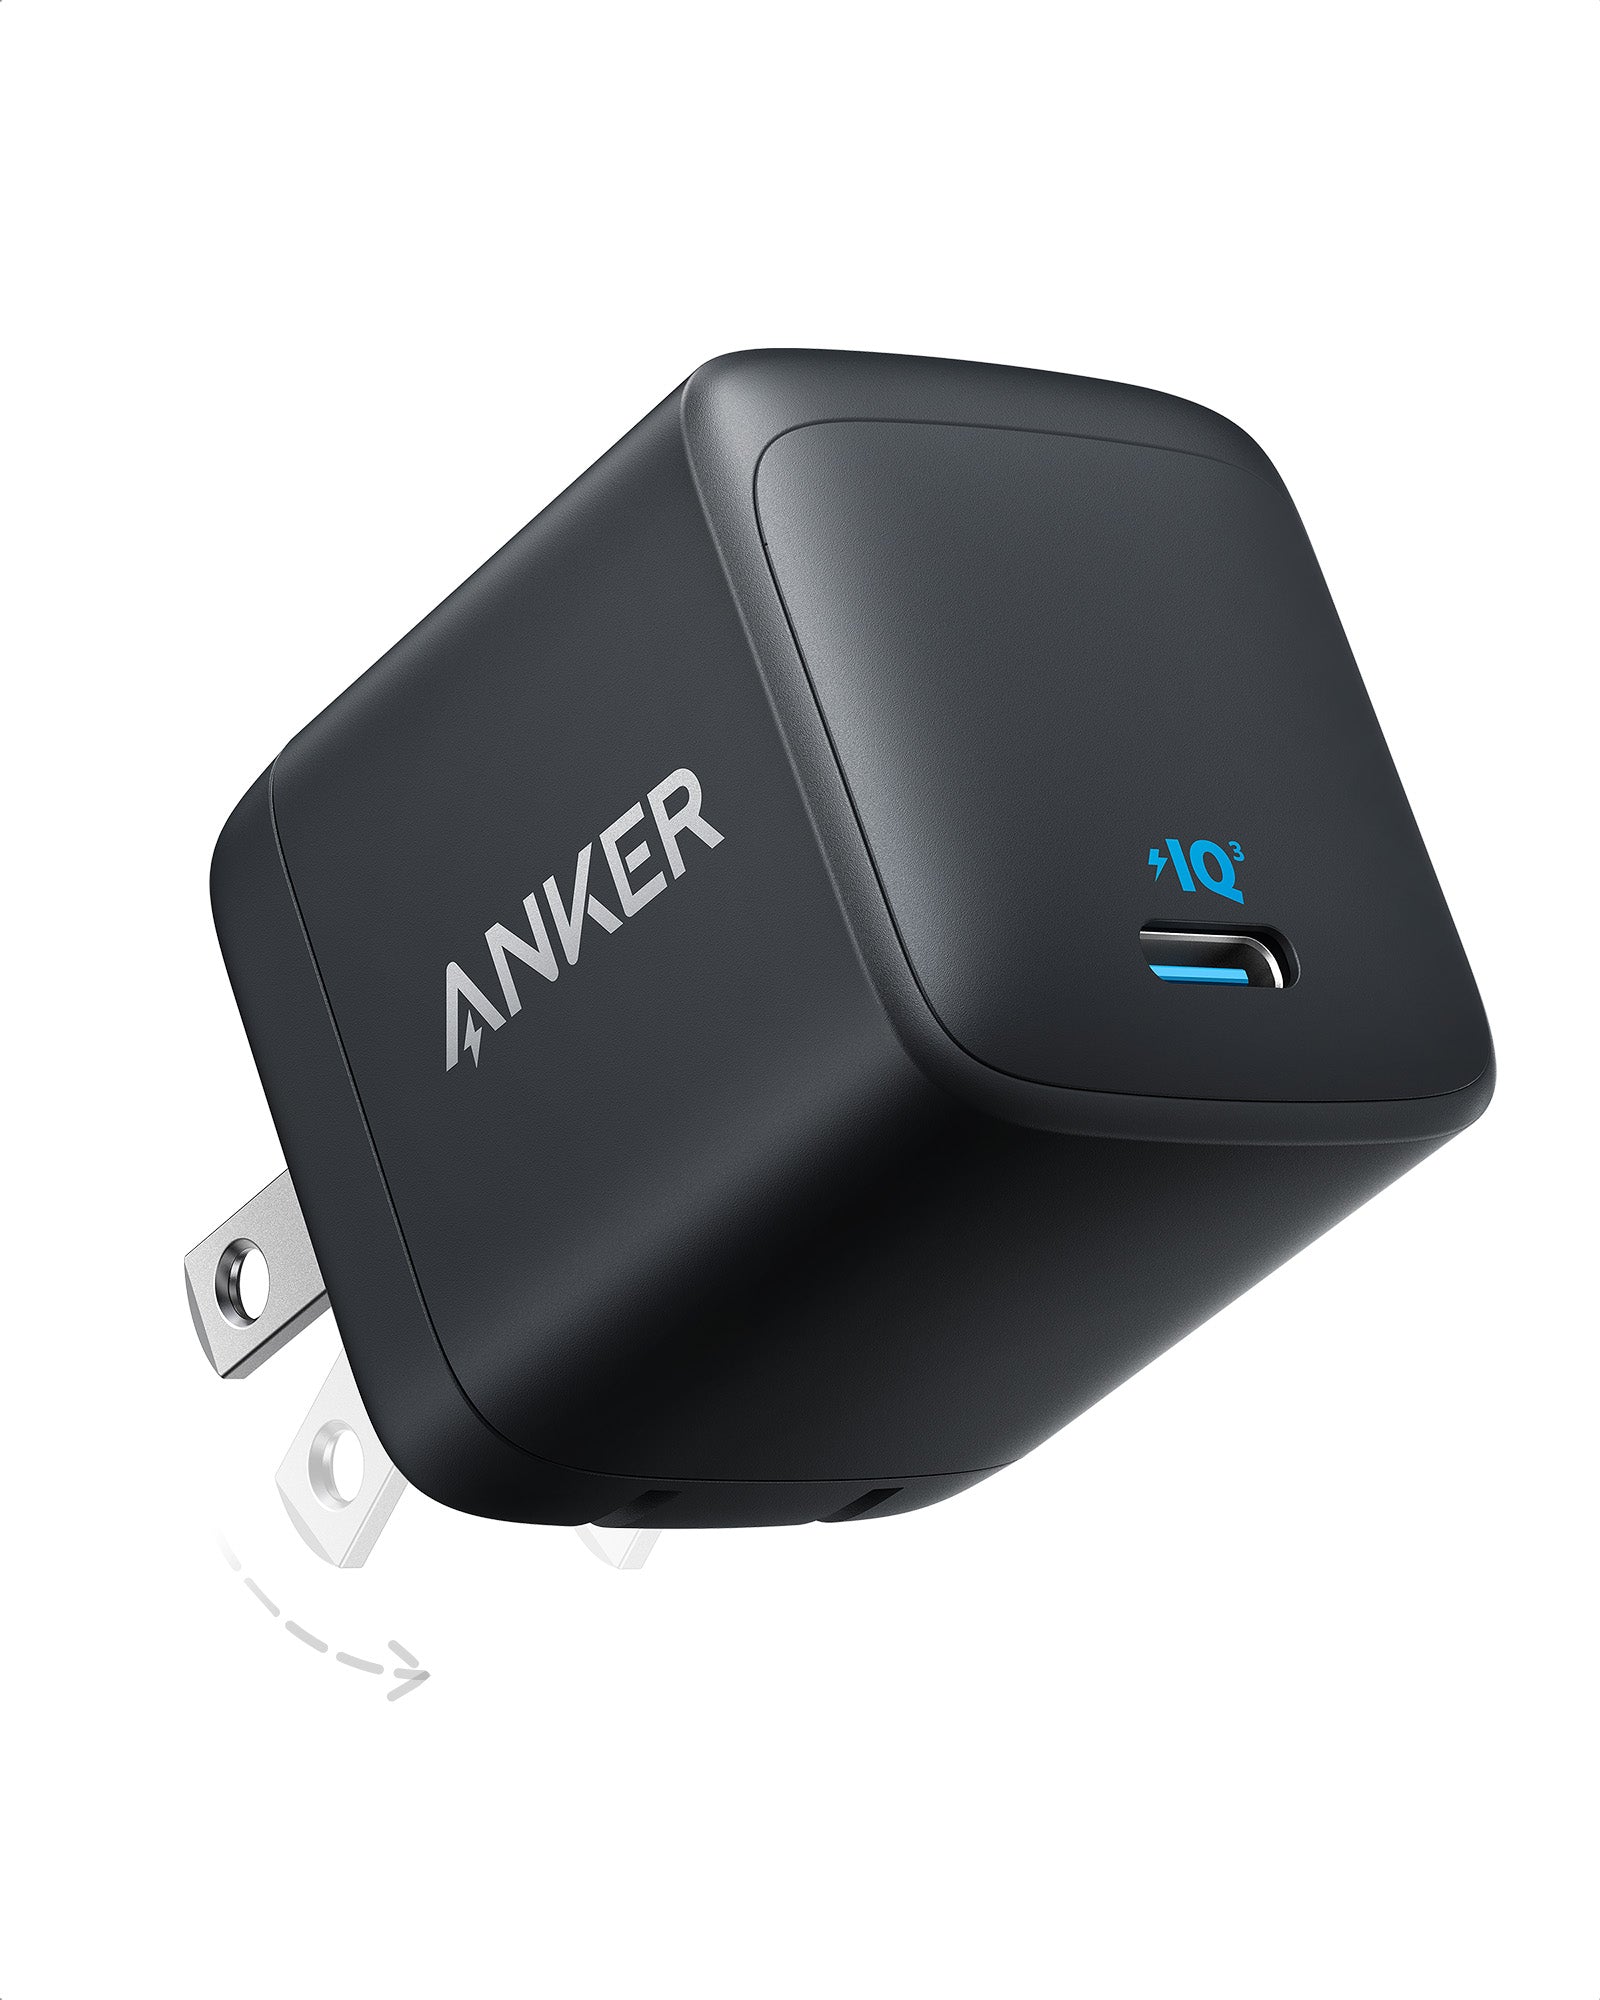 Anker PowerCore 10000 USB-C Power Delivery : meilleur prix, test